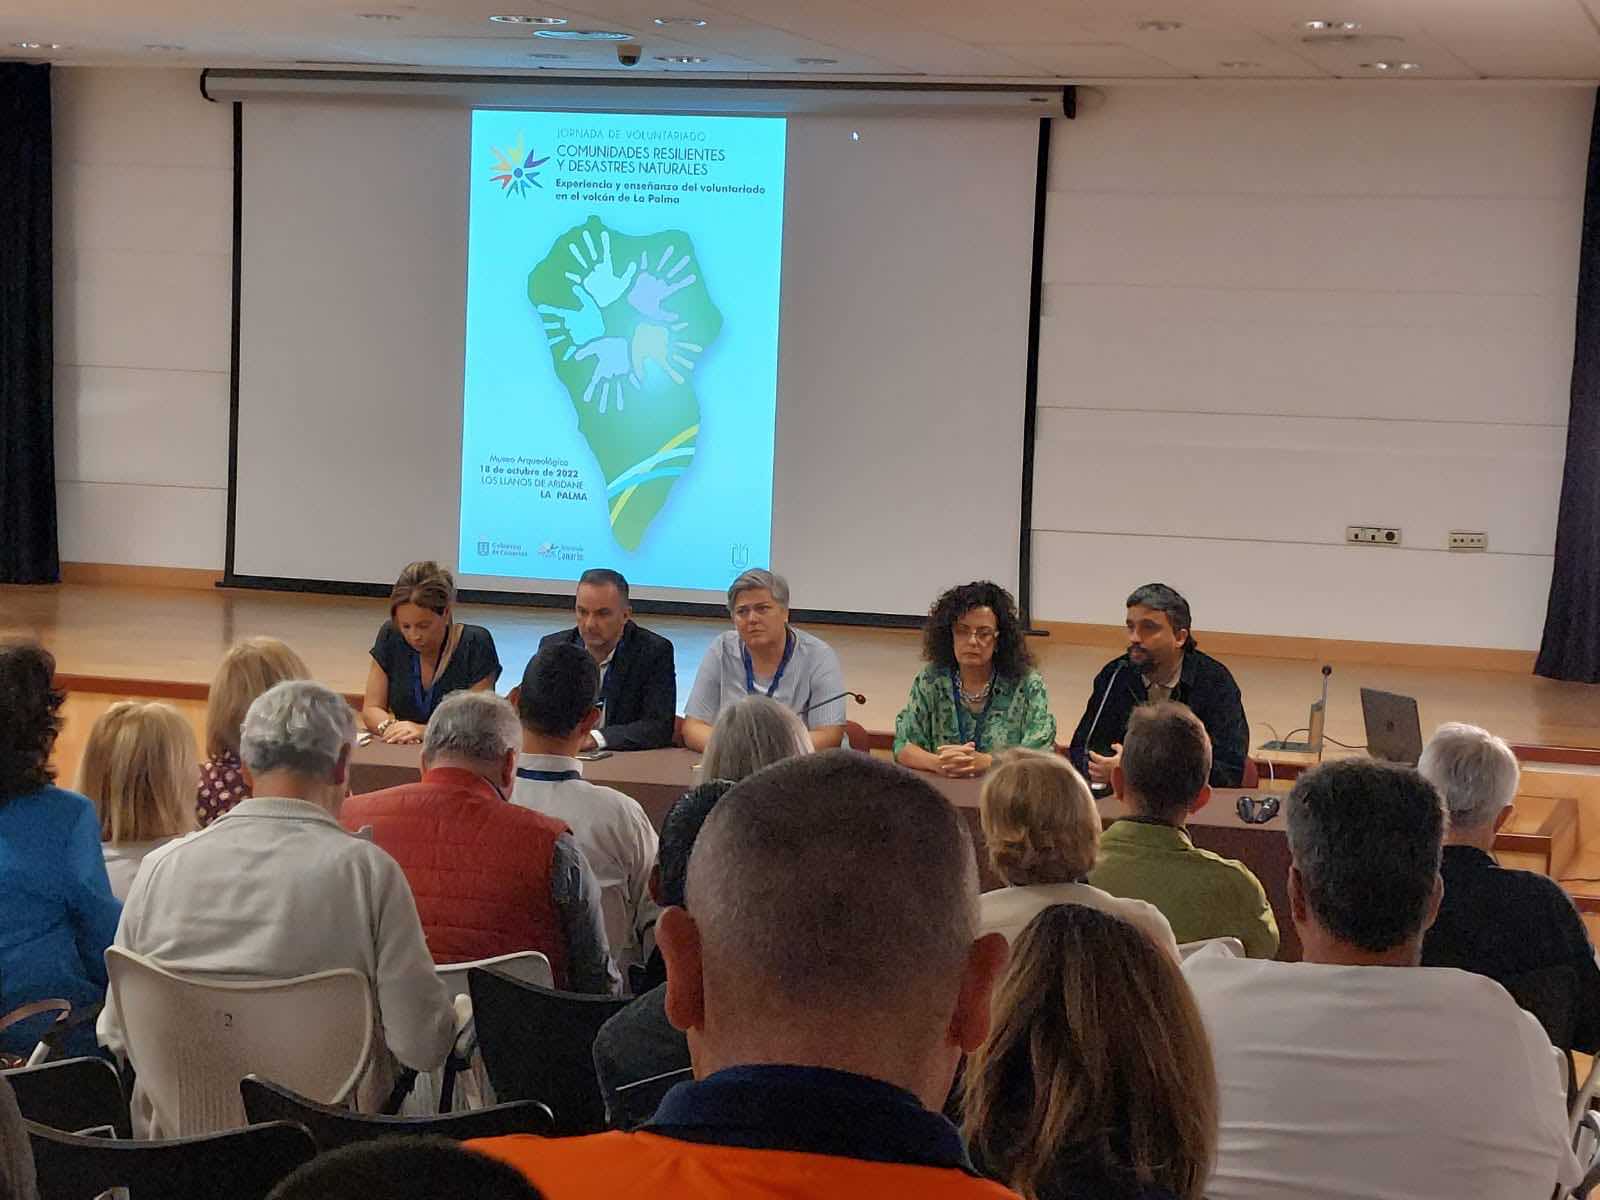 El voluntariado canario celebra en La Palma unas jornadas vinculadas a su trabajo solidario y resiliente